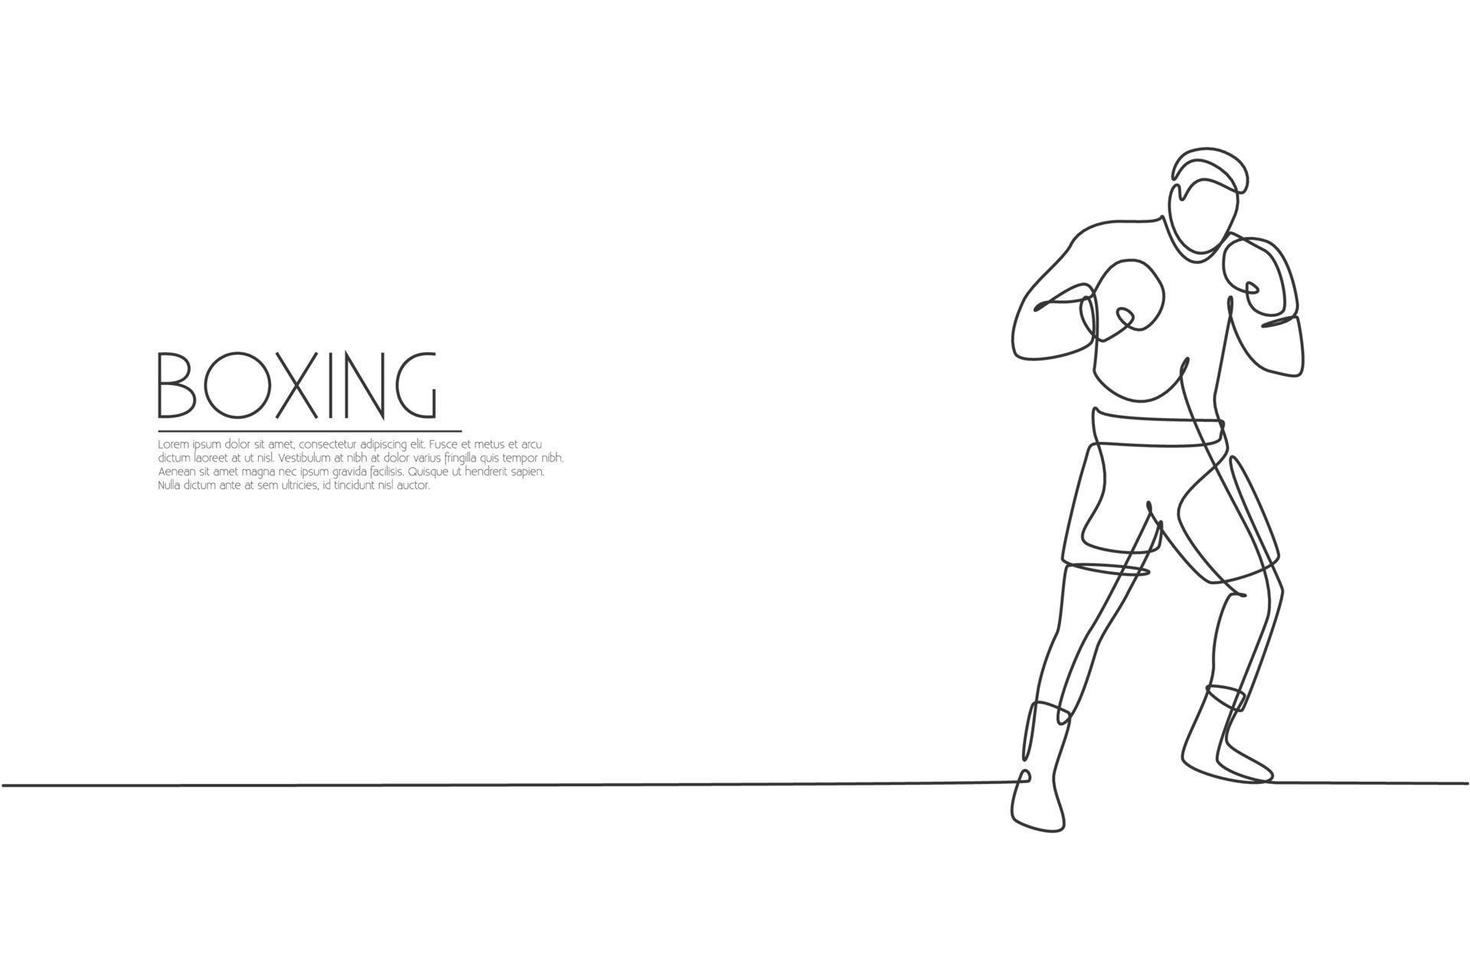 enda kontinuerlig linjeteckning av ung smidig man boxare förbättra sin kamp hållning på gym. rättvist stridssportkoncept. trendiga en rad rita design vektorillustration för boxningsspel marknadsföring media vektor